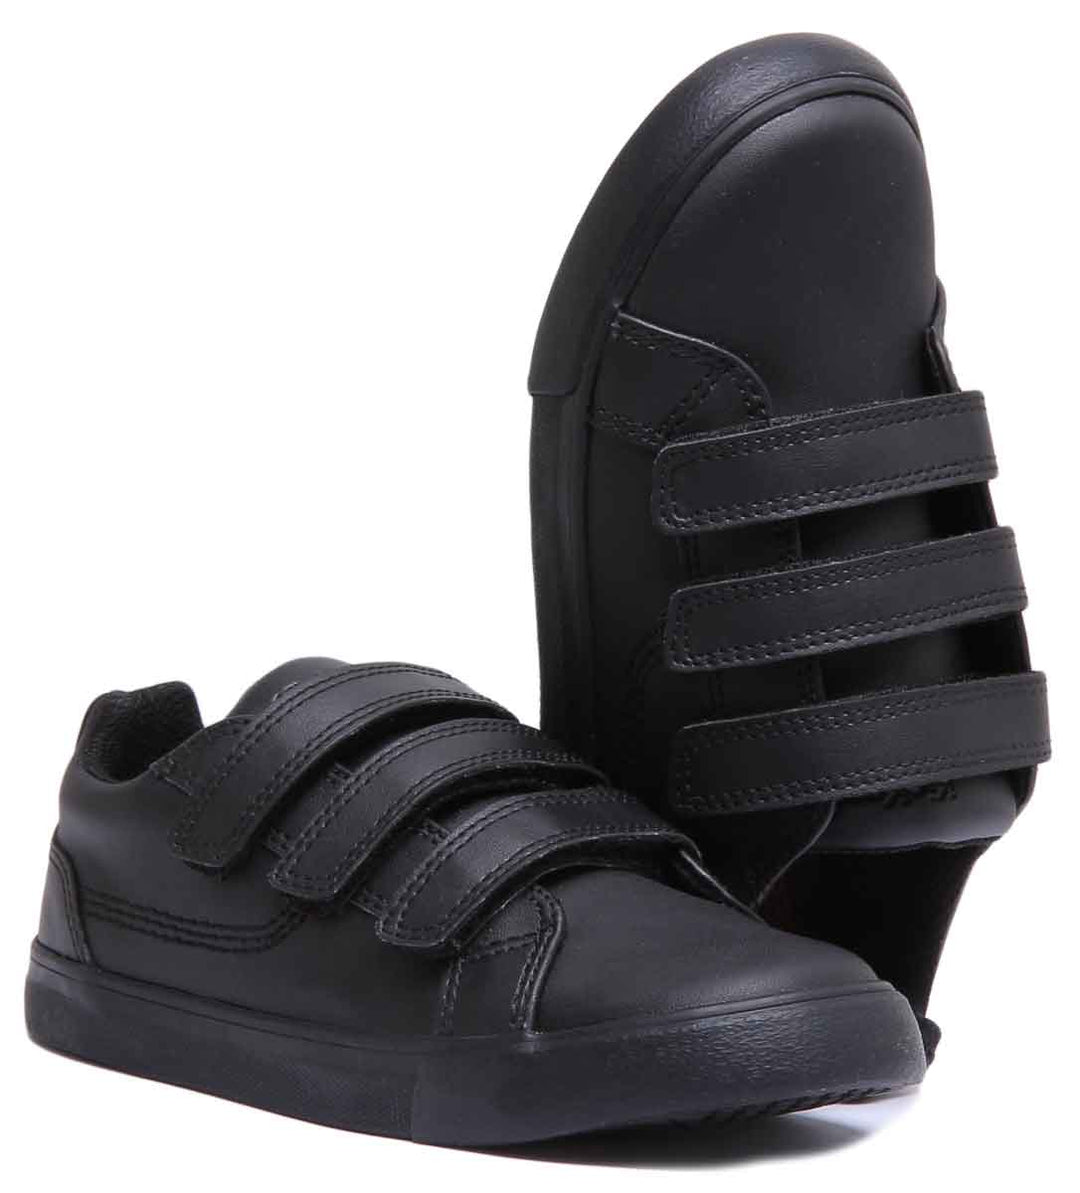 Kickers Tovni Trip Velcro In Black in Infants UK Size 5 - 12